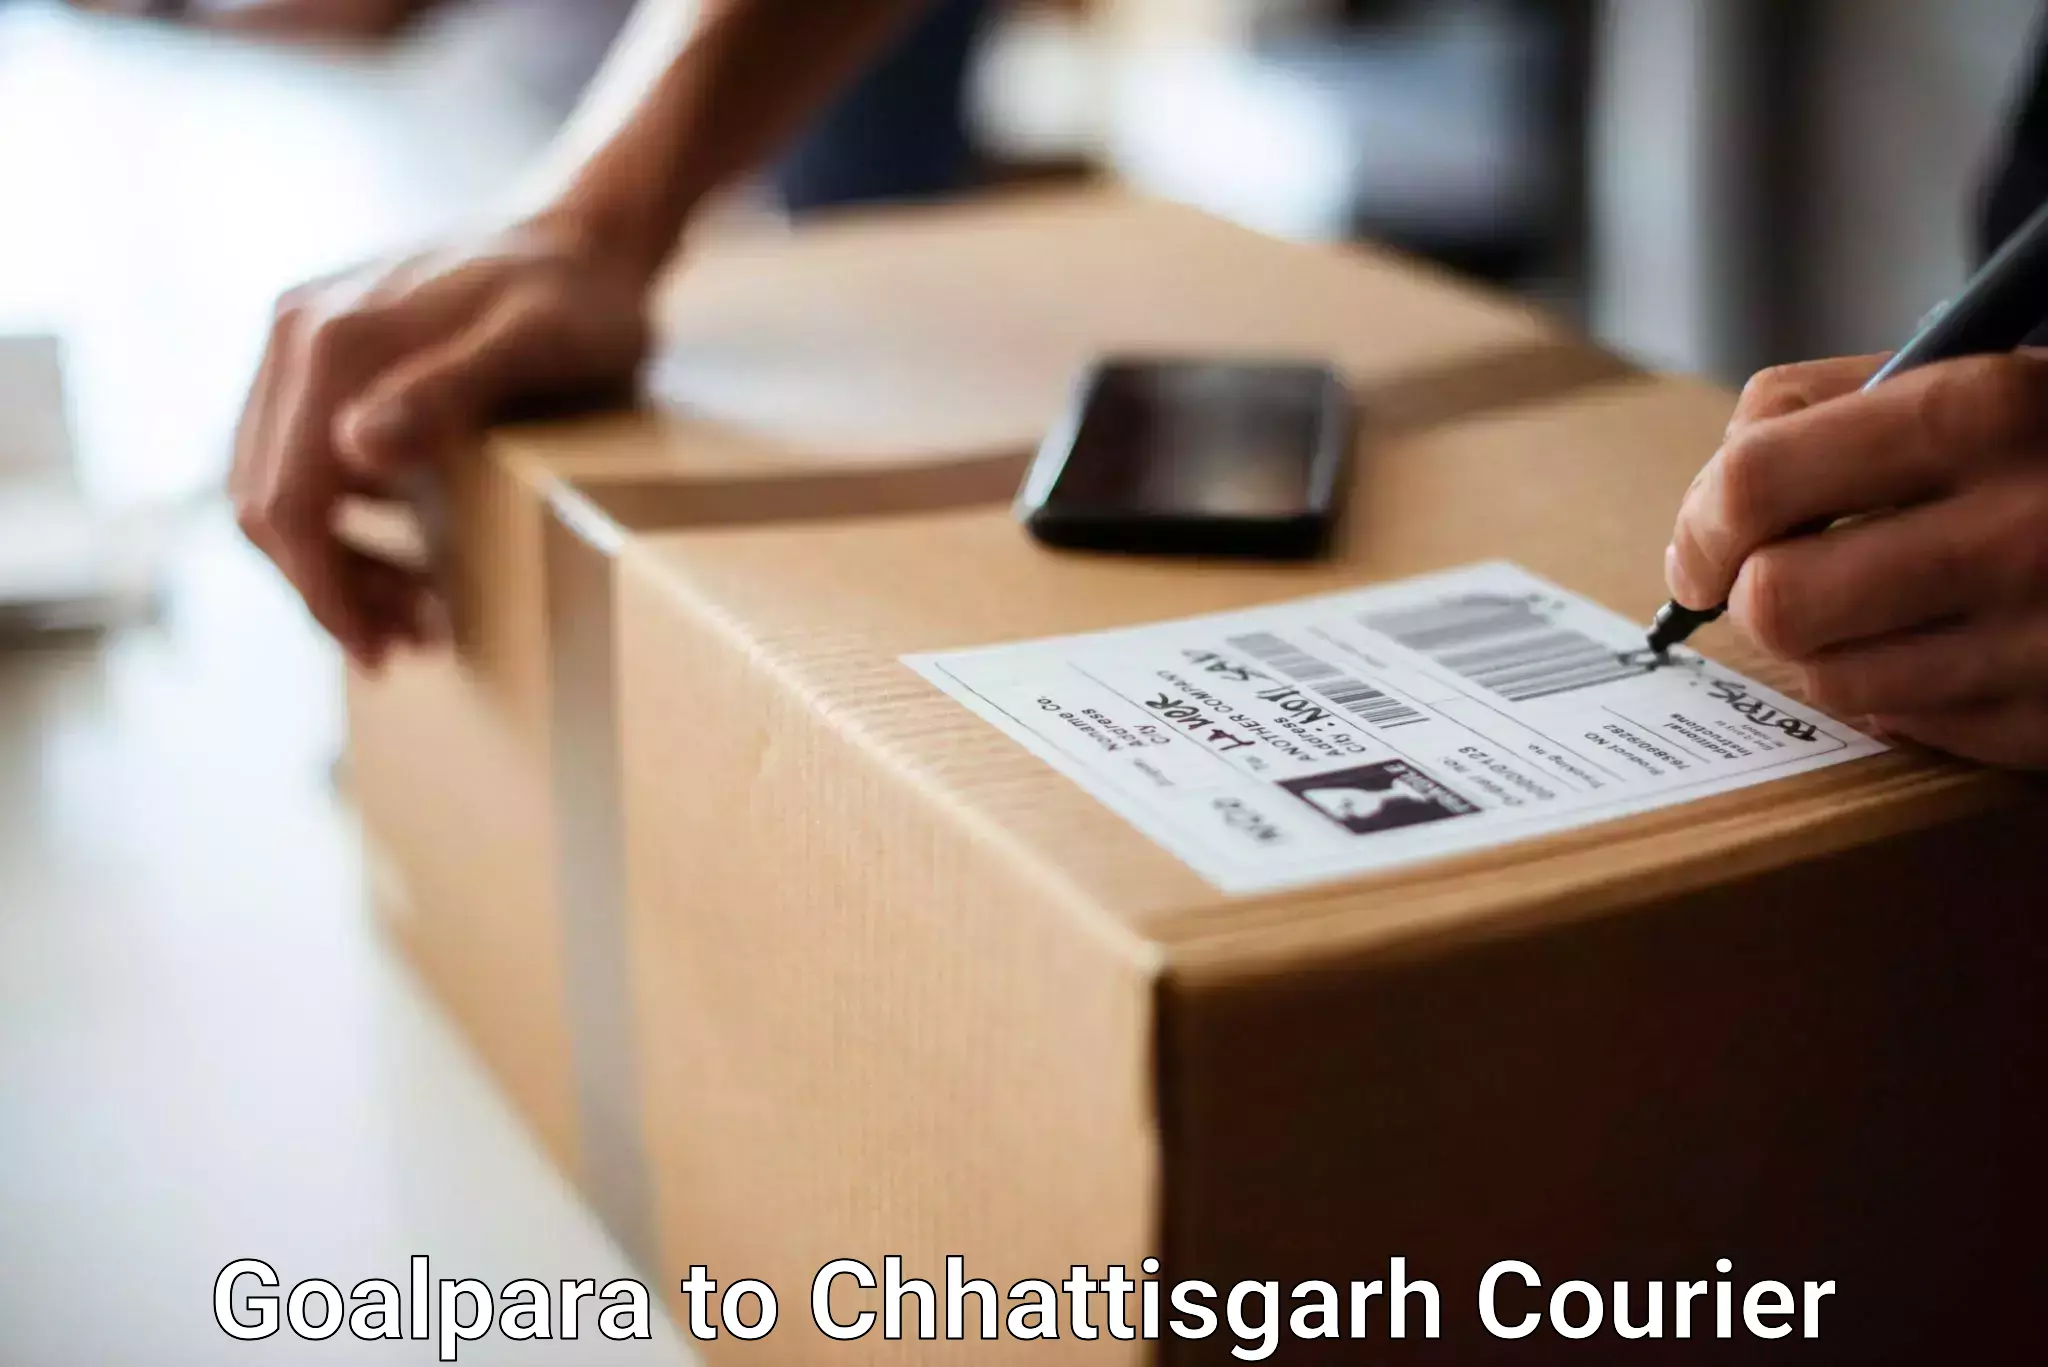 Luggage shipment specialists Goalpara to Wadrafnagar